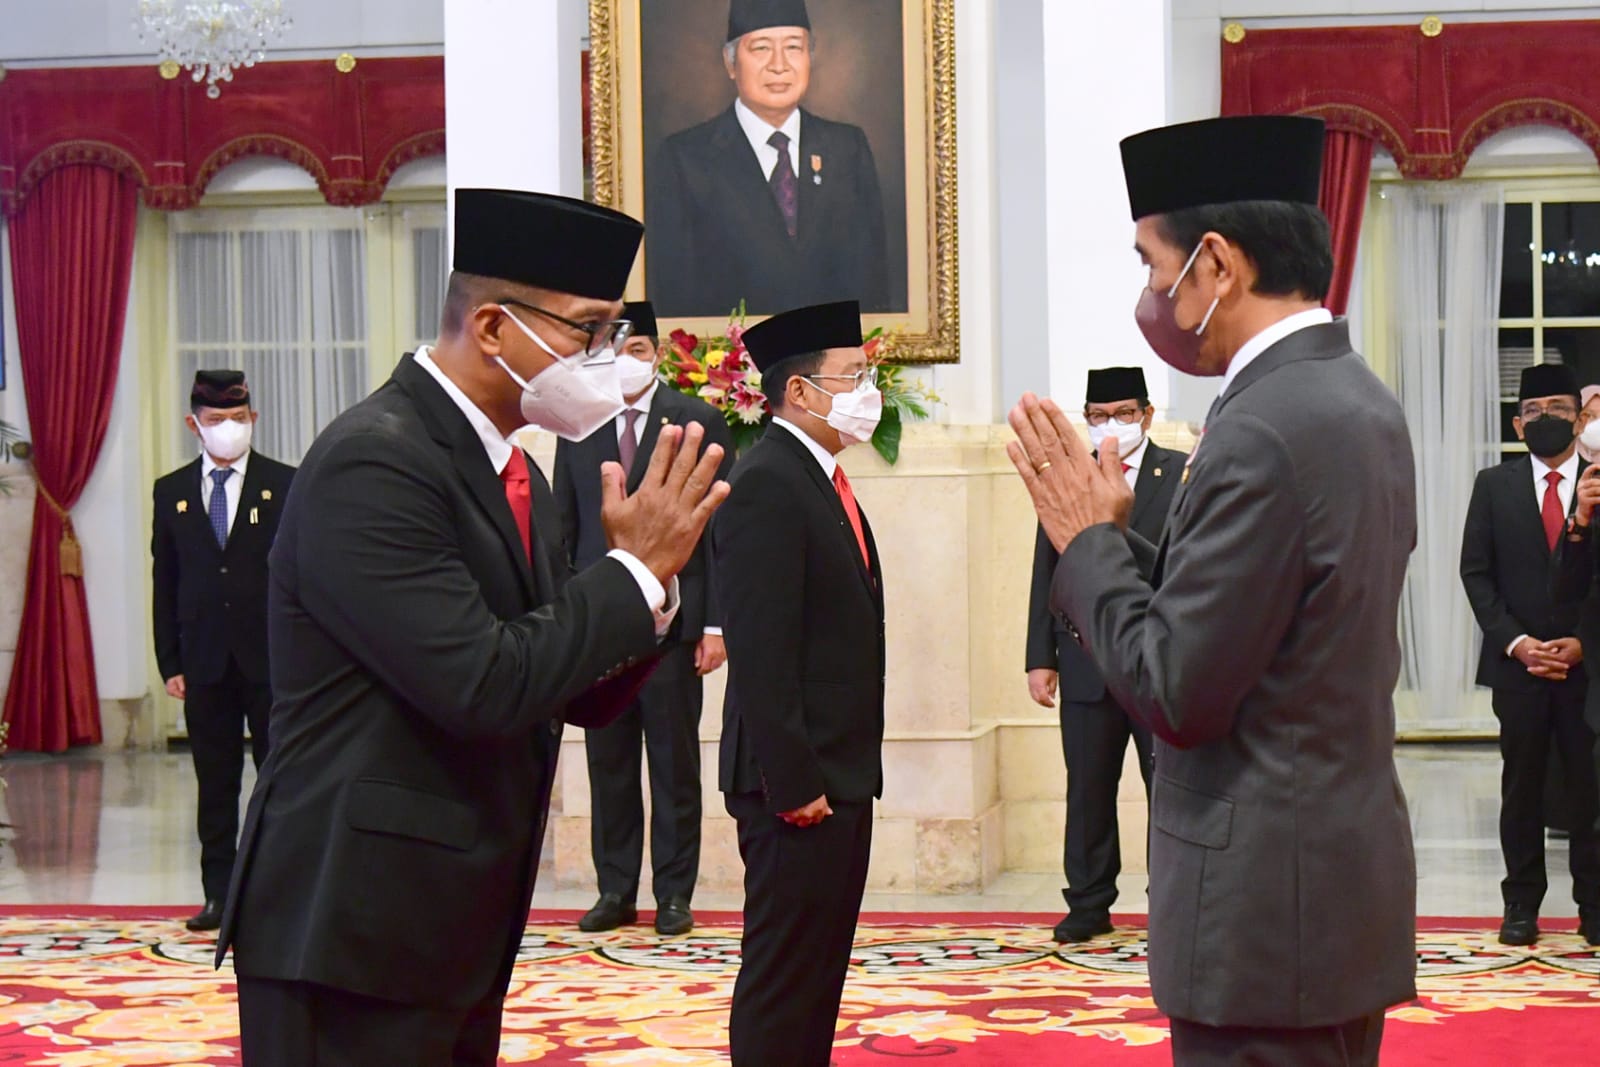 Presiden Jokowi Lantik Gubernur Lemhannas dan Kepala Badan Pangan Nasional